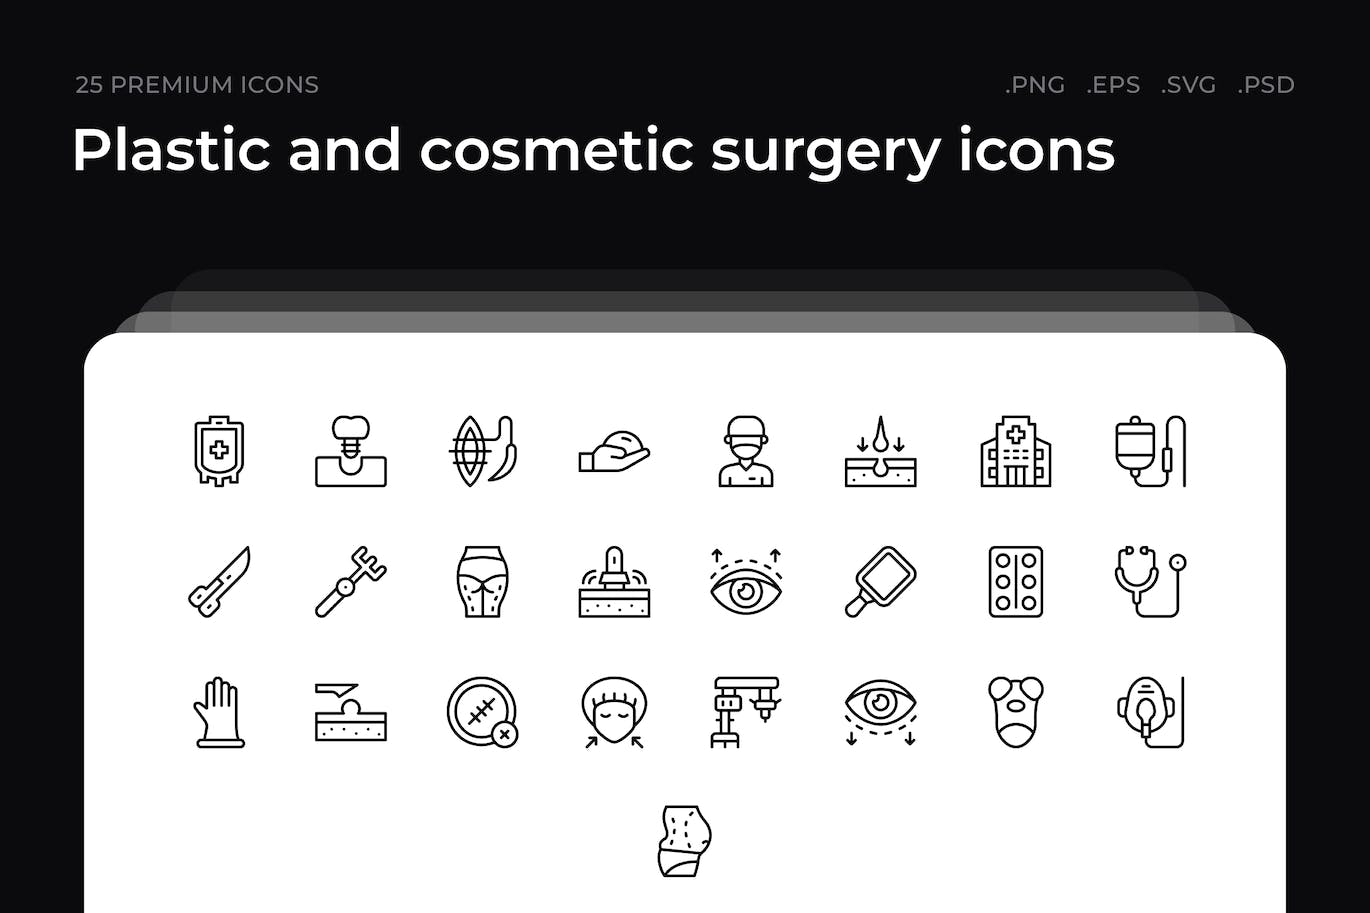 25枚整形美容主题简约线条矢量图标 Plastic and cosmetic surgery icons 图标素材 第1张